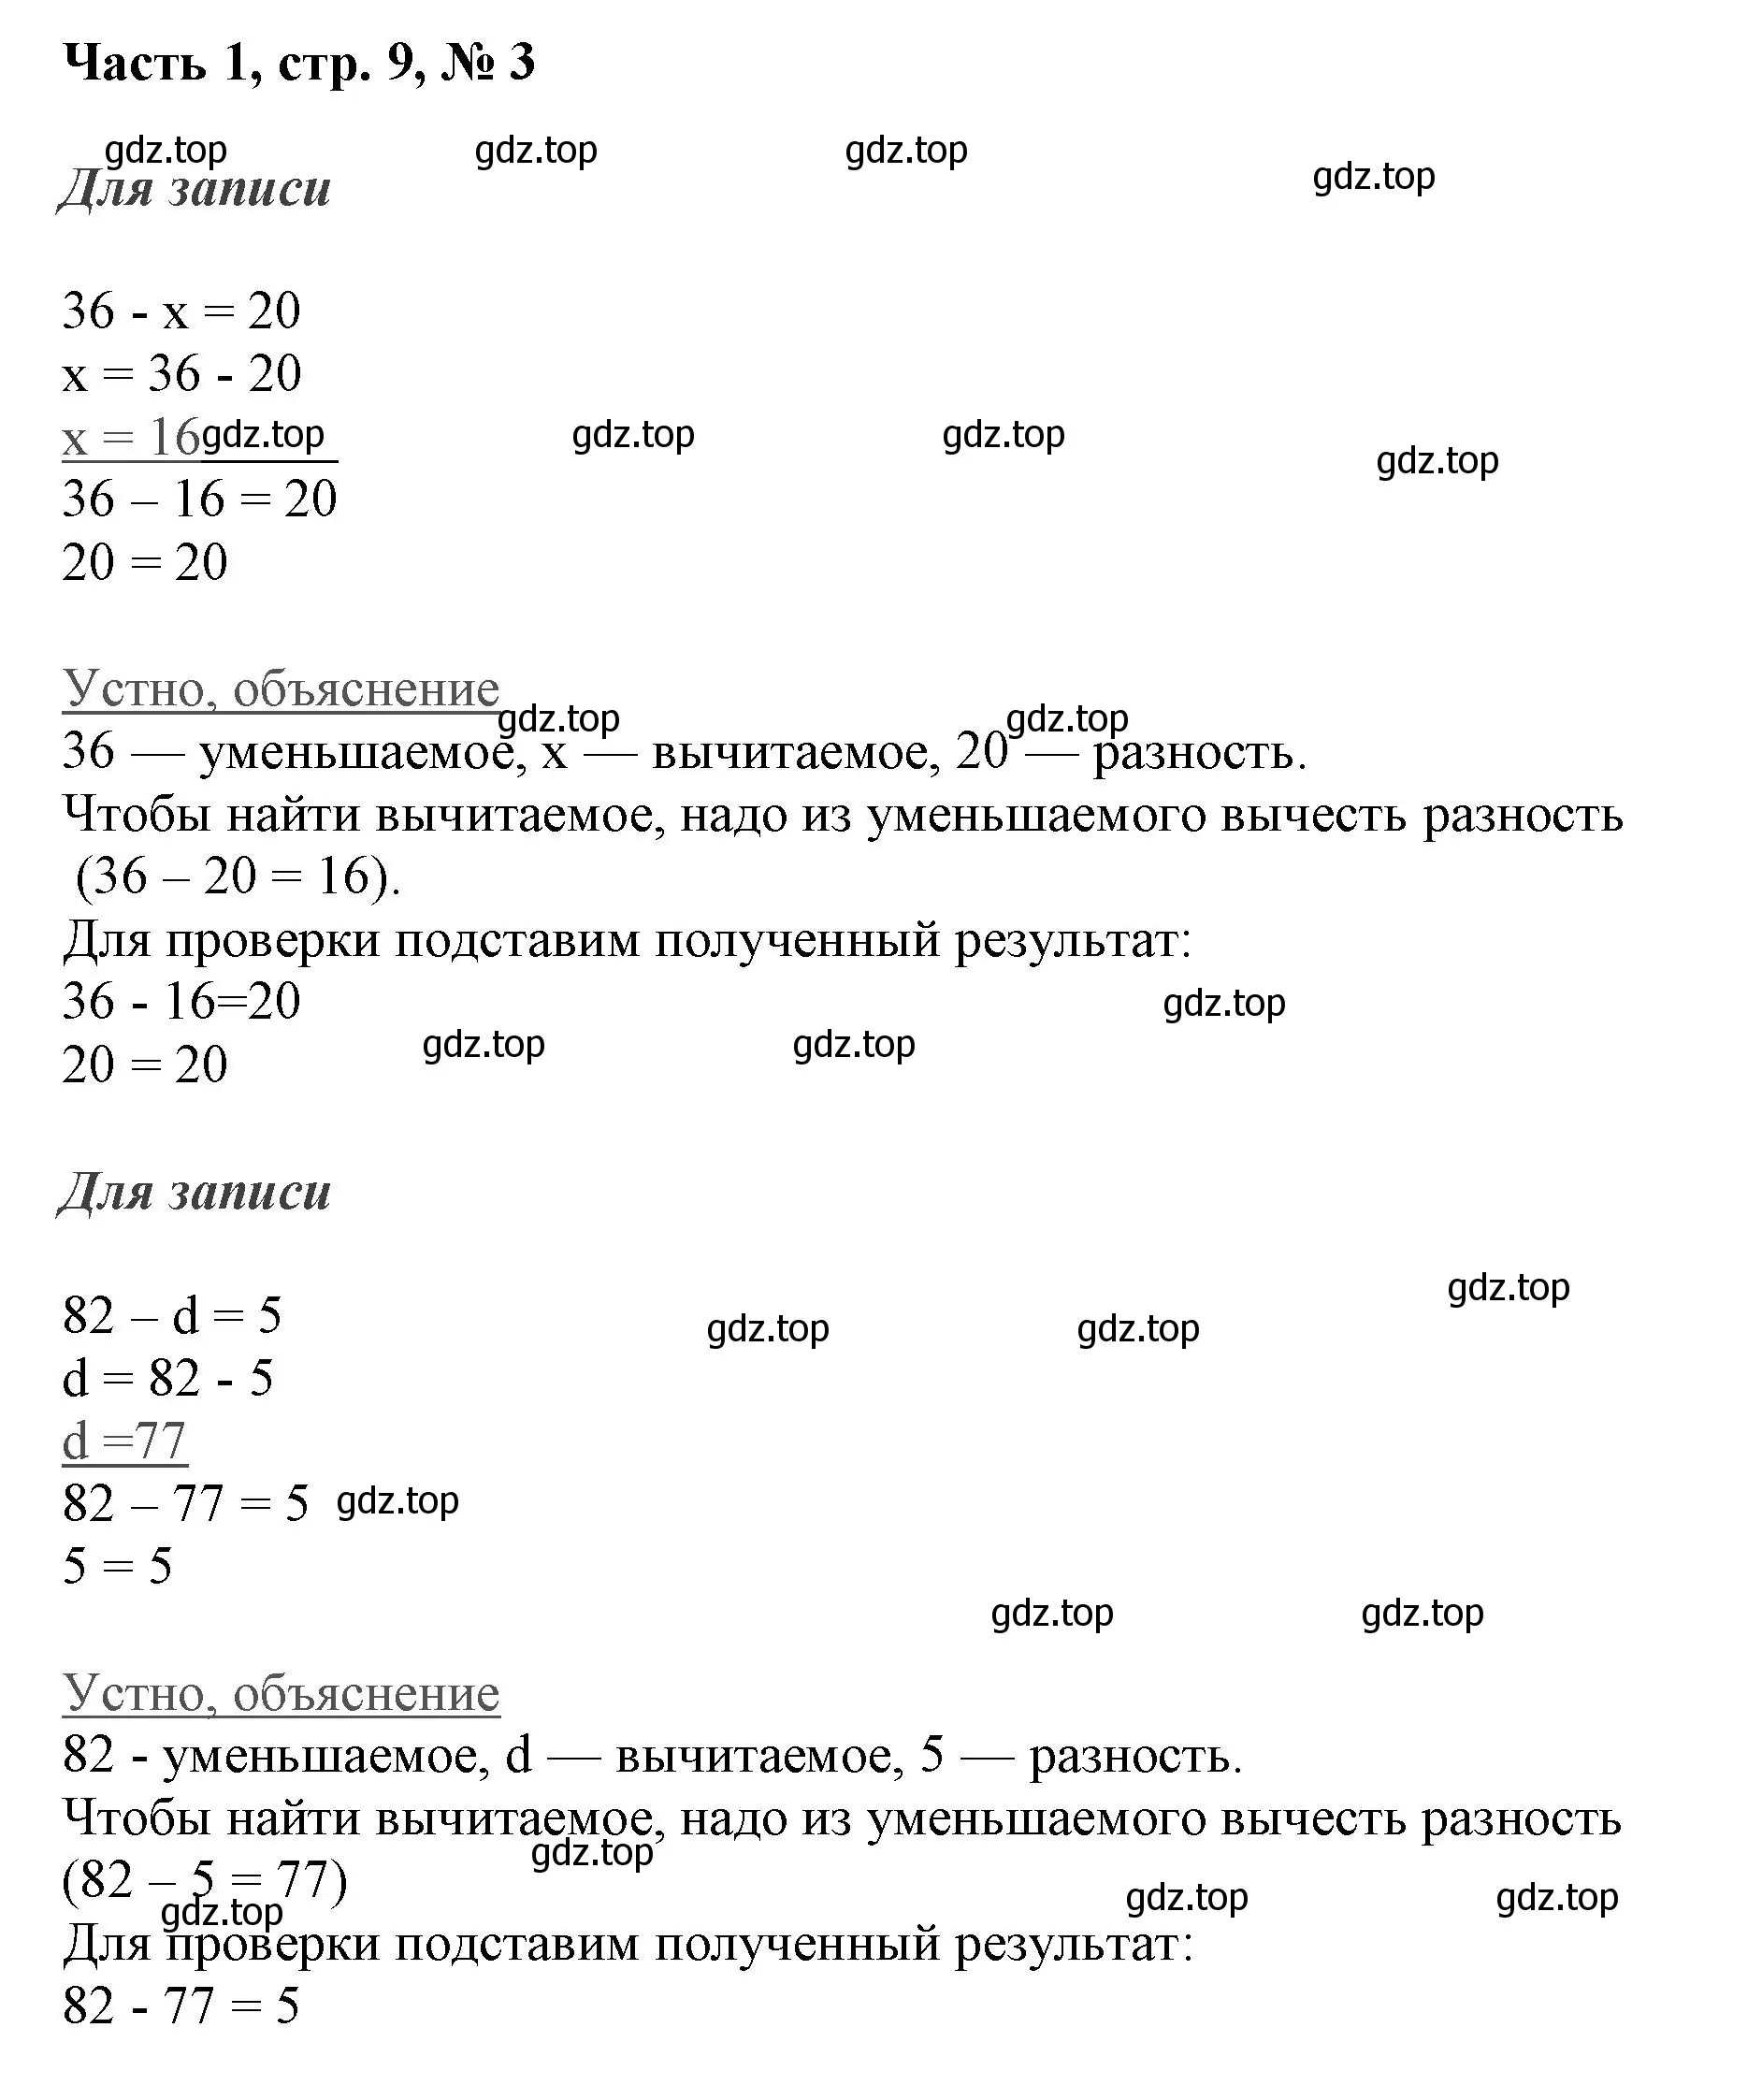 Решение номер 3 (страница 9) гдз по математике 3 класс Моро, Бантова, учебник 1 часть